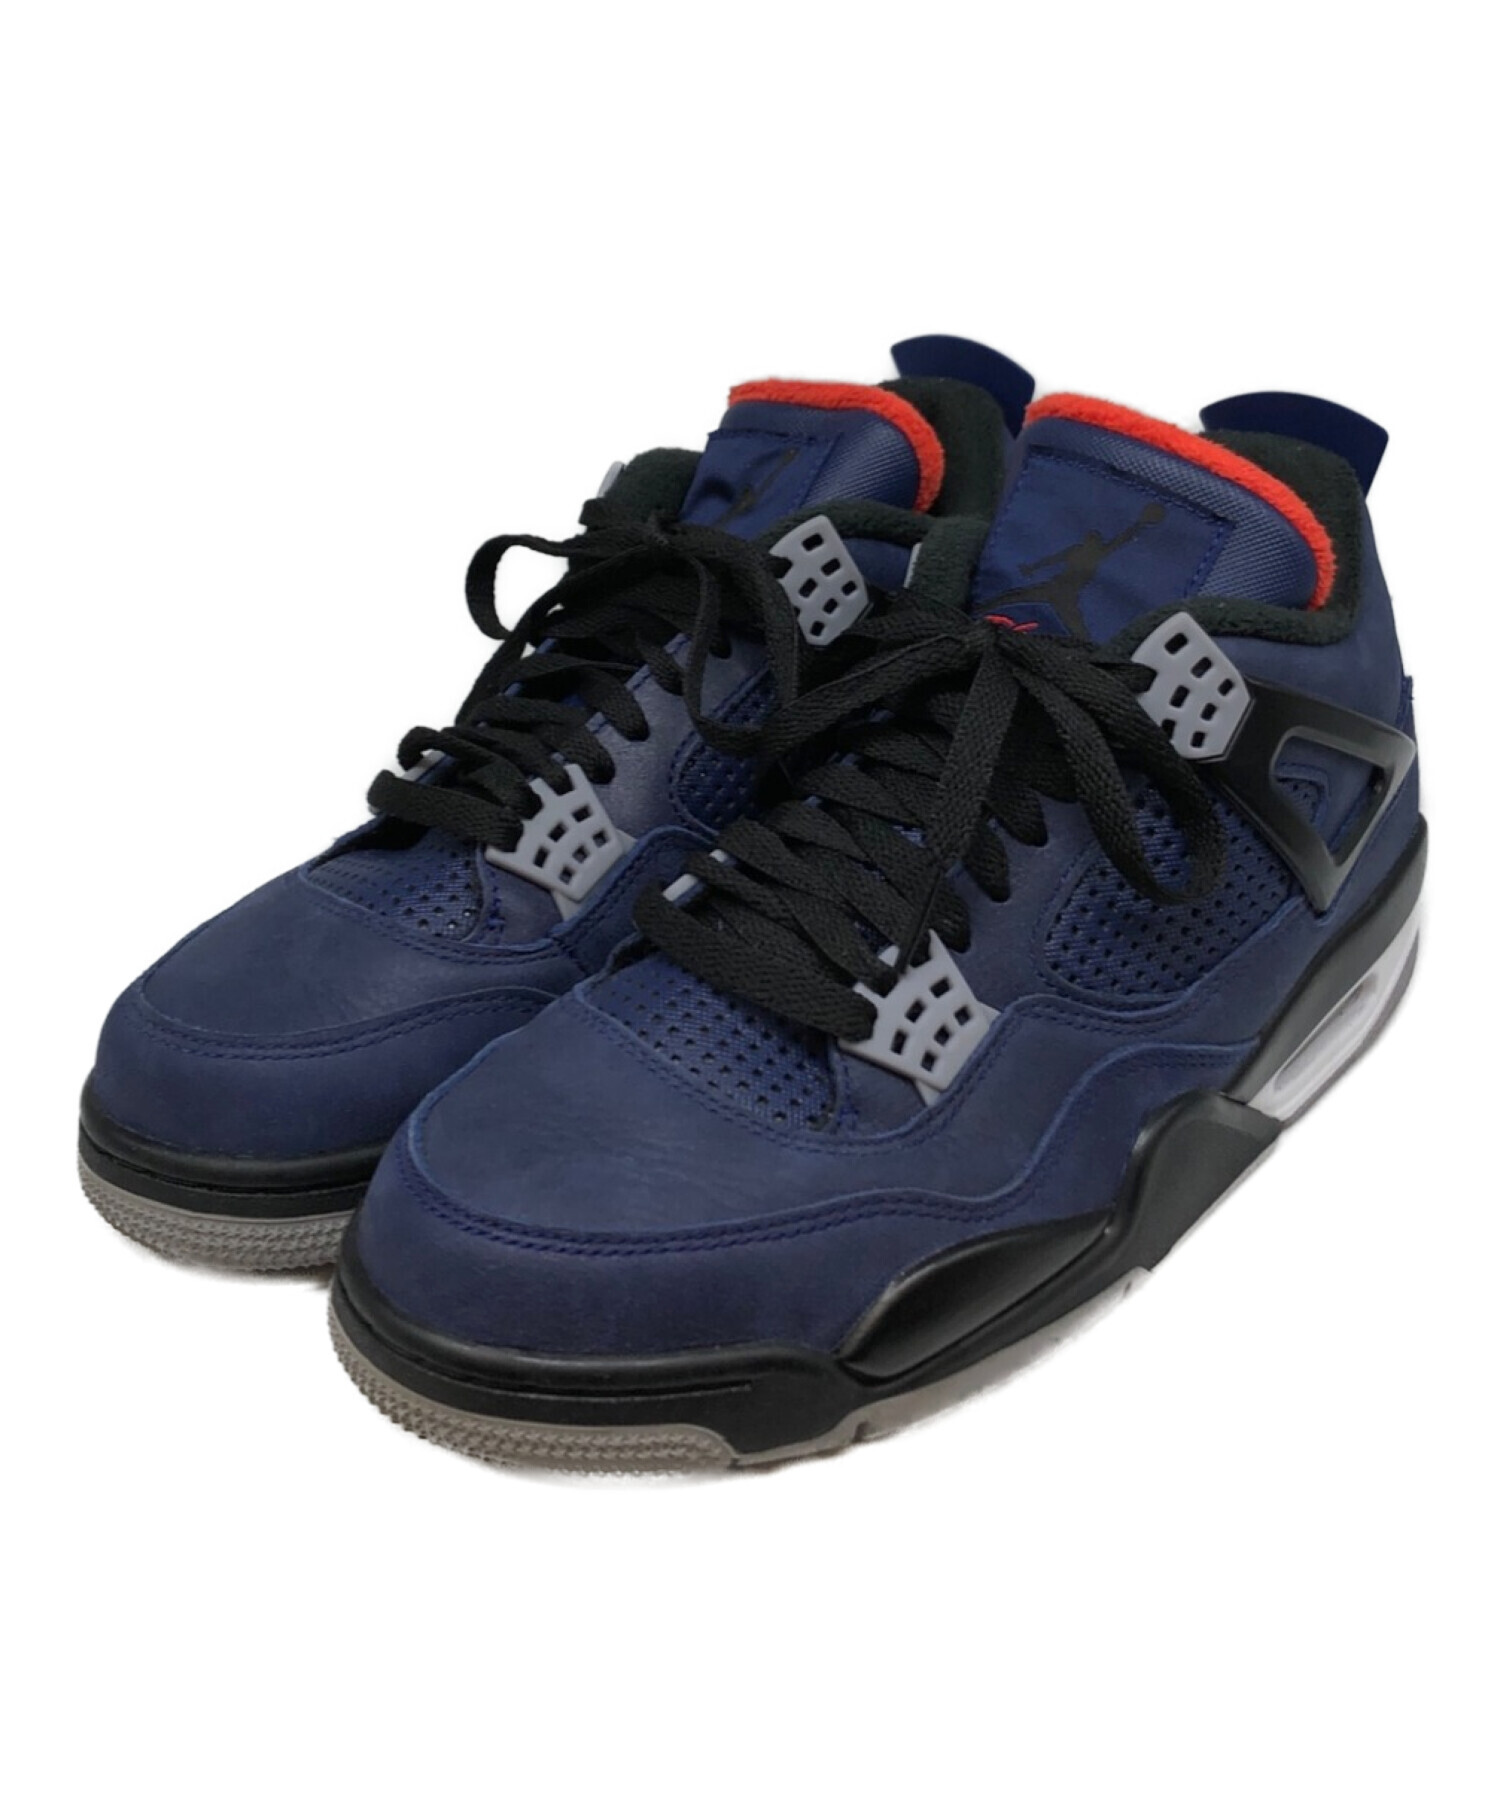 Air Jordan 4 retro wntr靴